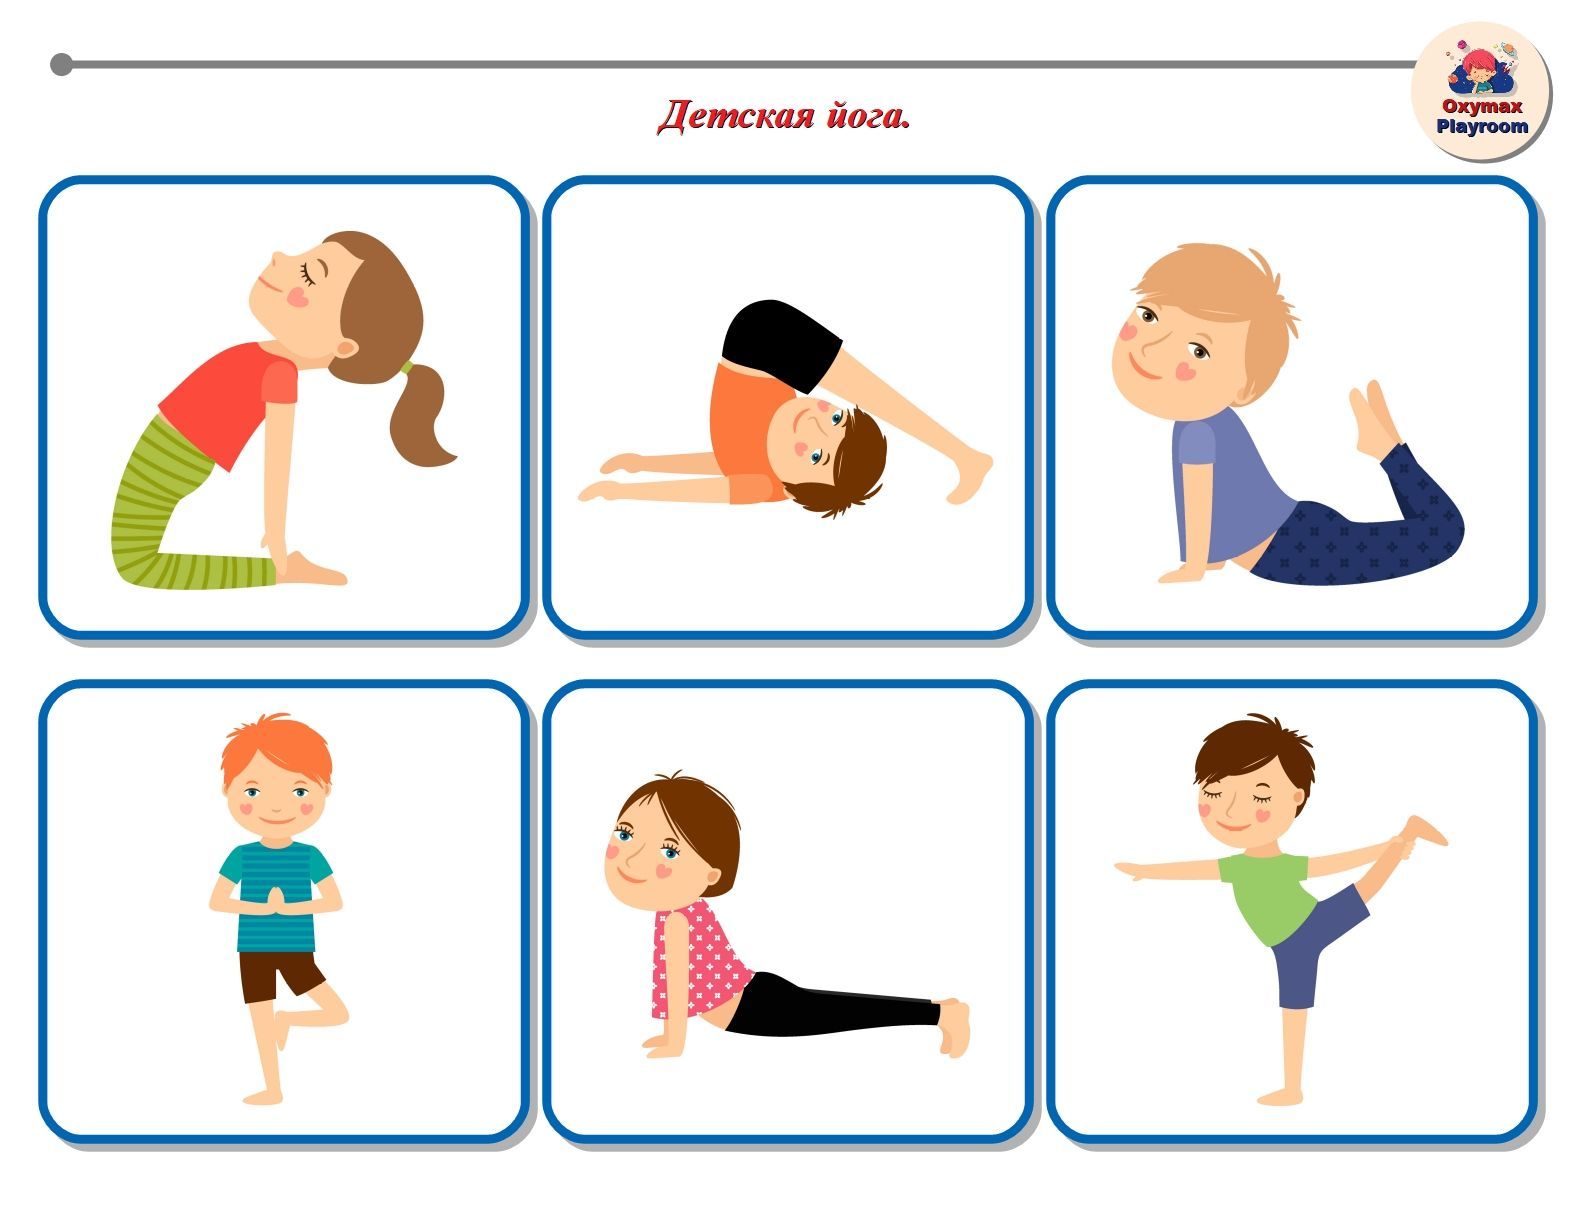 Детская йога: видеоуроки. как увлечь ребенка делать упражнения